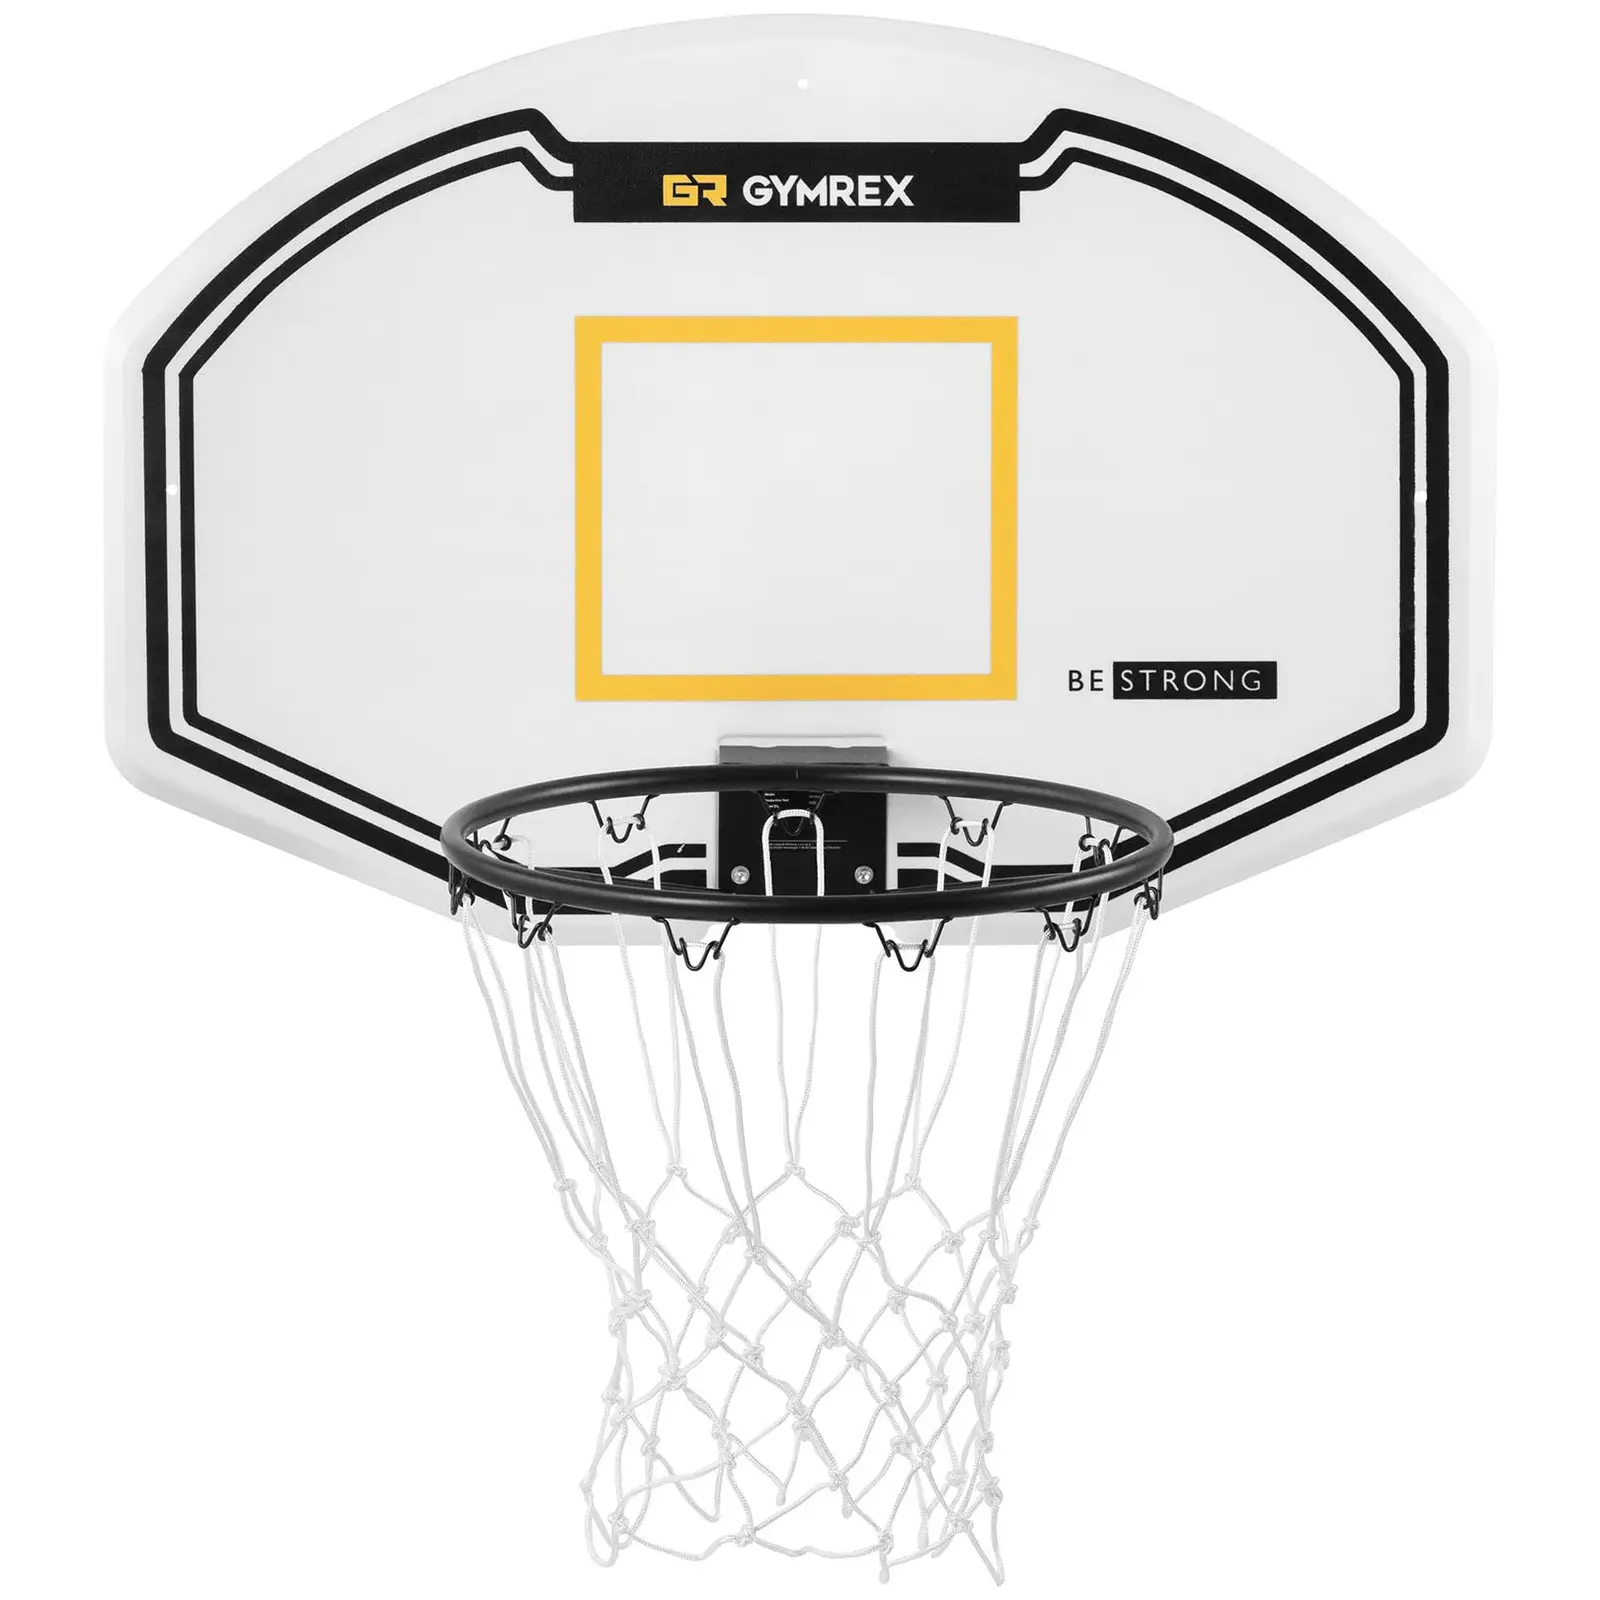 Canestro basket da muro con tabellone - 91 x 61 cm - Diametro: 42,5 cm